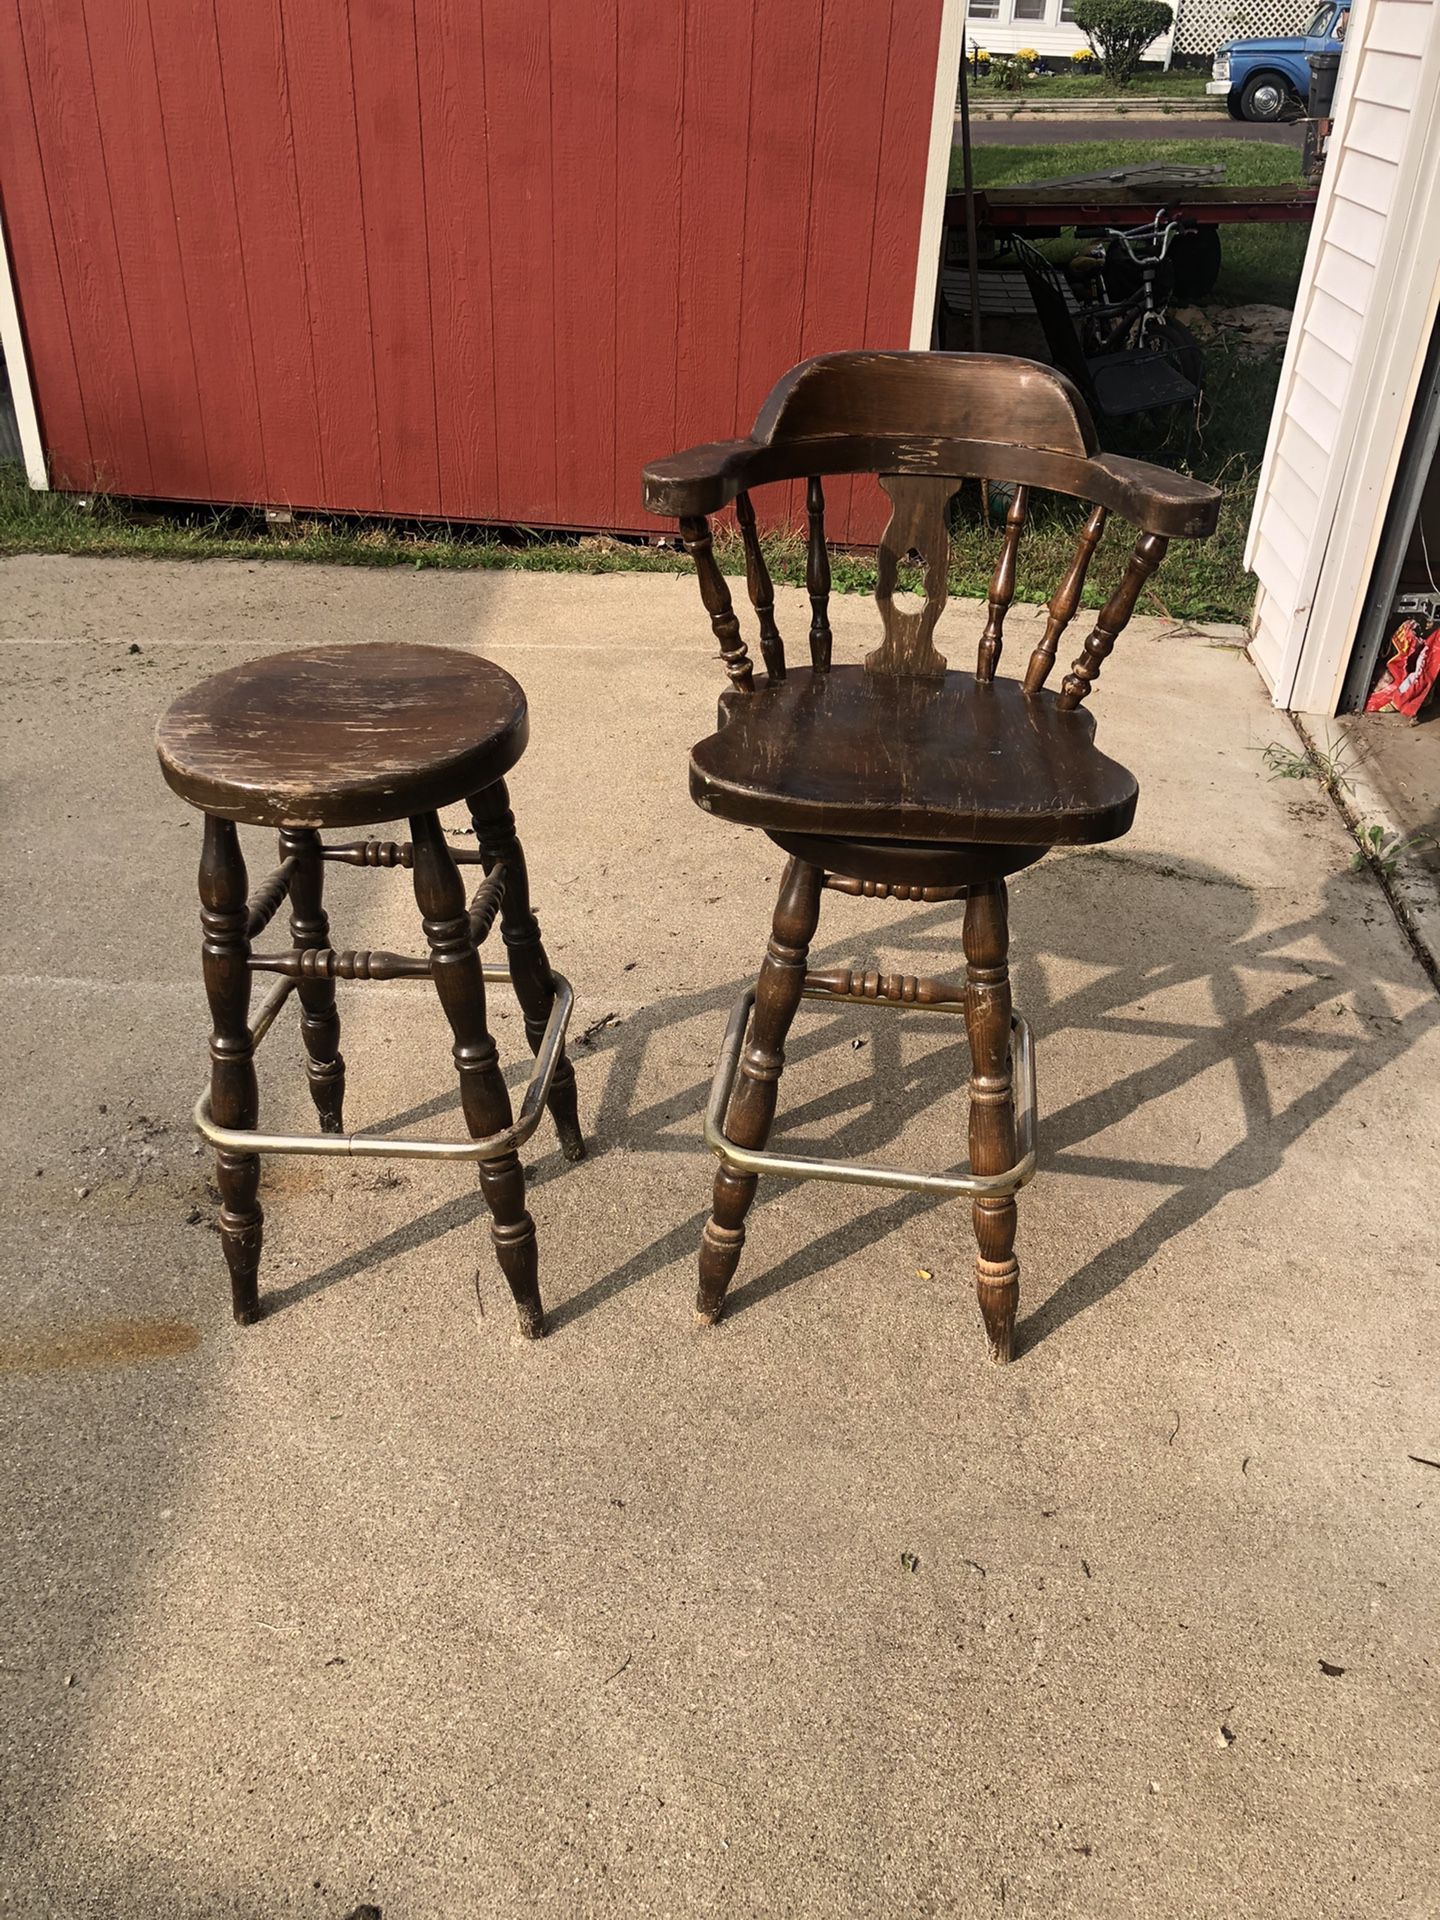 Old heavy bar stools